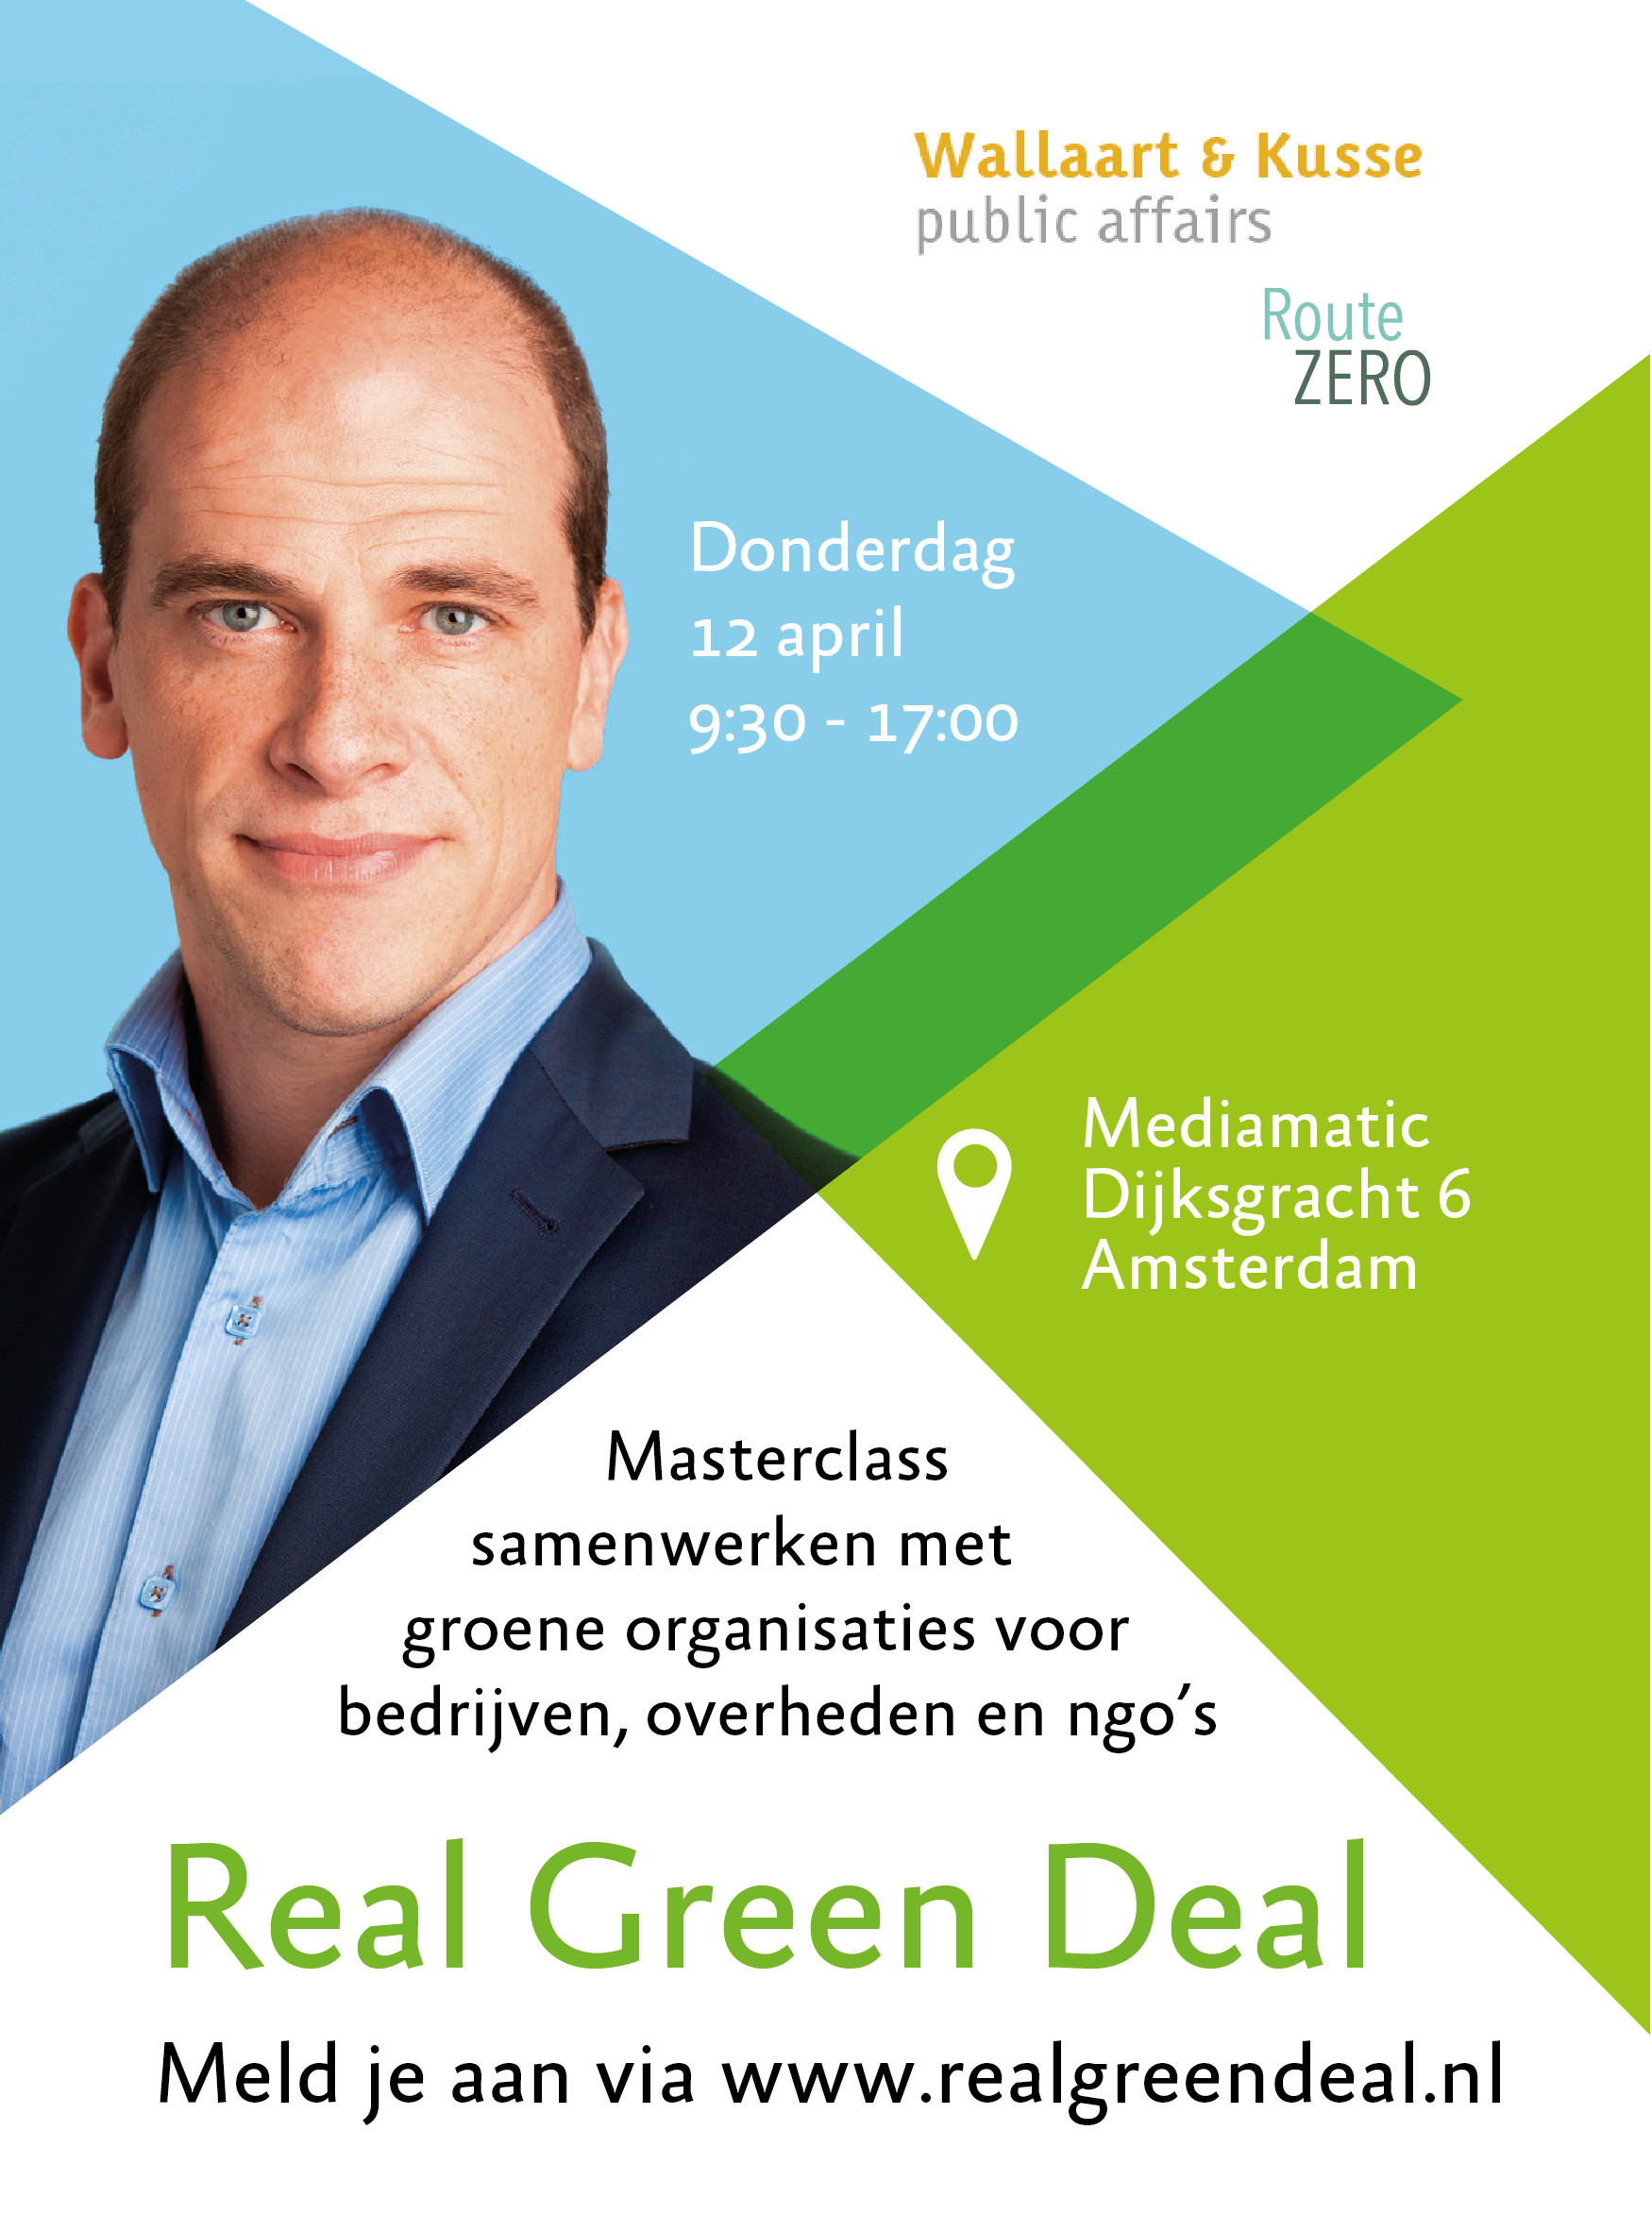 Real Green Deal: Masterclass samenwerken met groene organisaties voor bedrijven en overheden